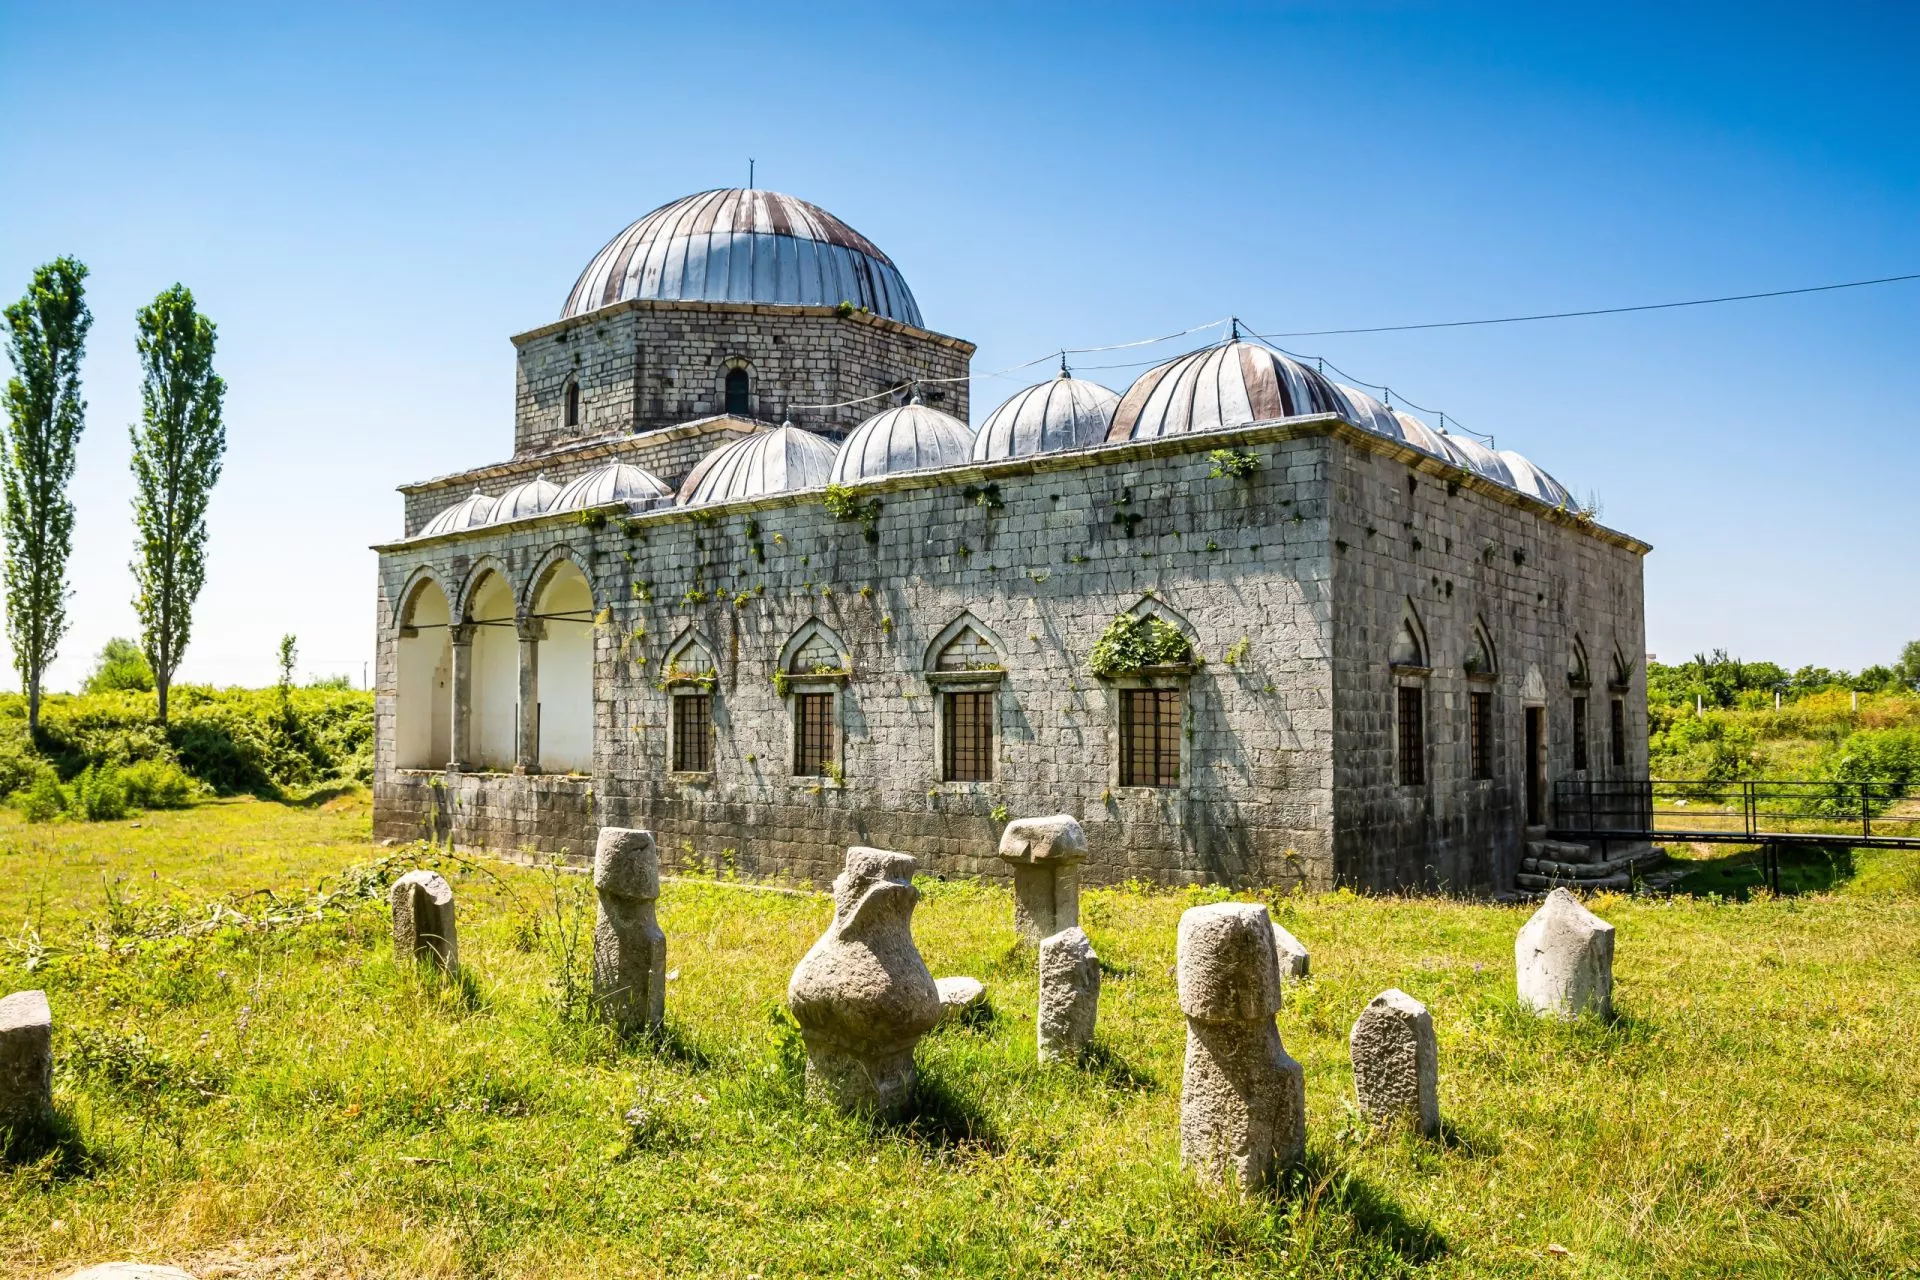 La Moschea di Piombo, conosciuta anche come Moschea Busatli Mehmet Pasha, è una moschea storica di Scutari.